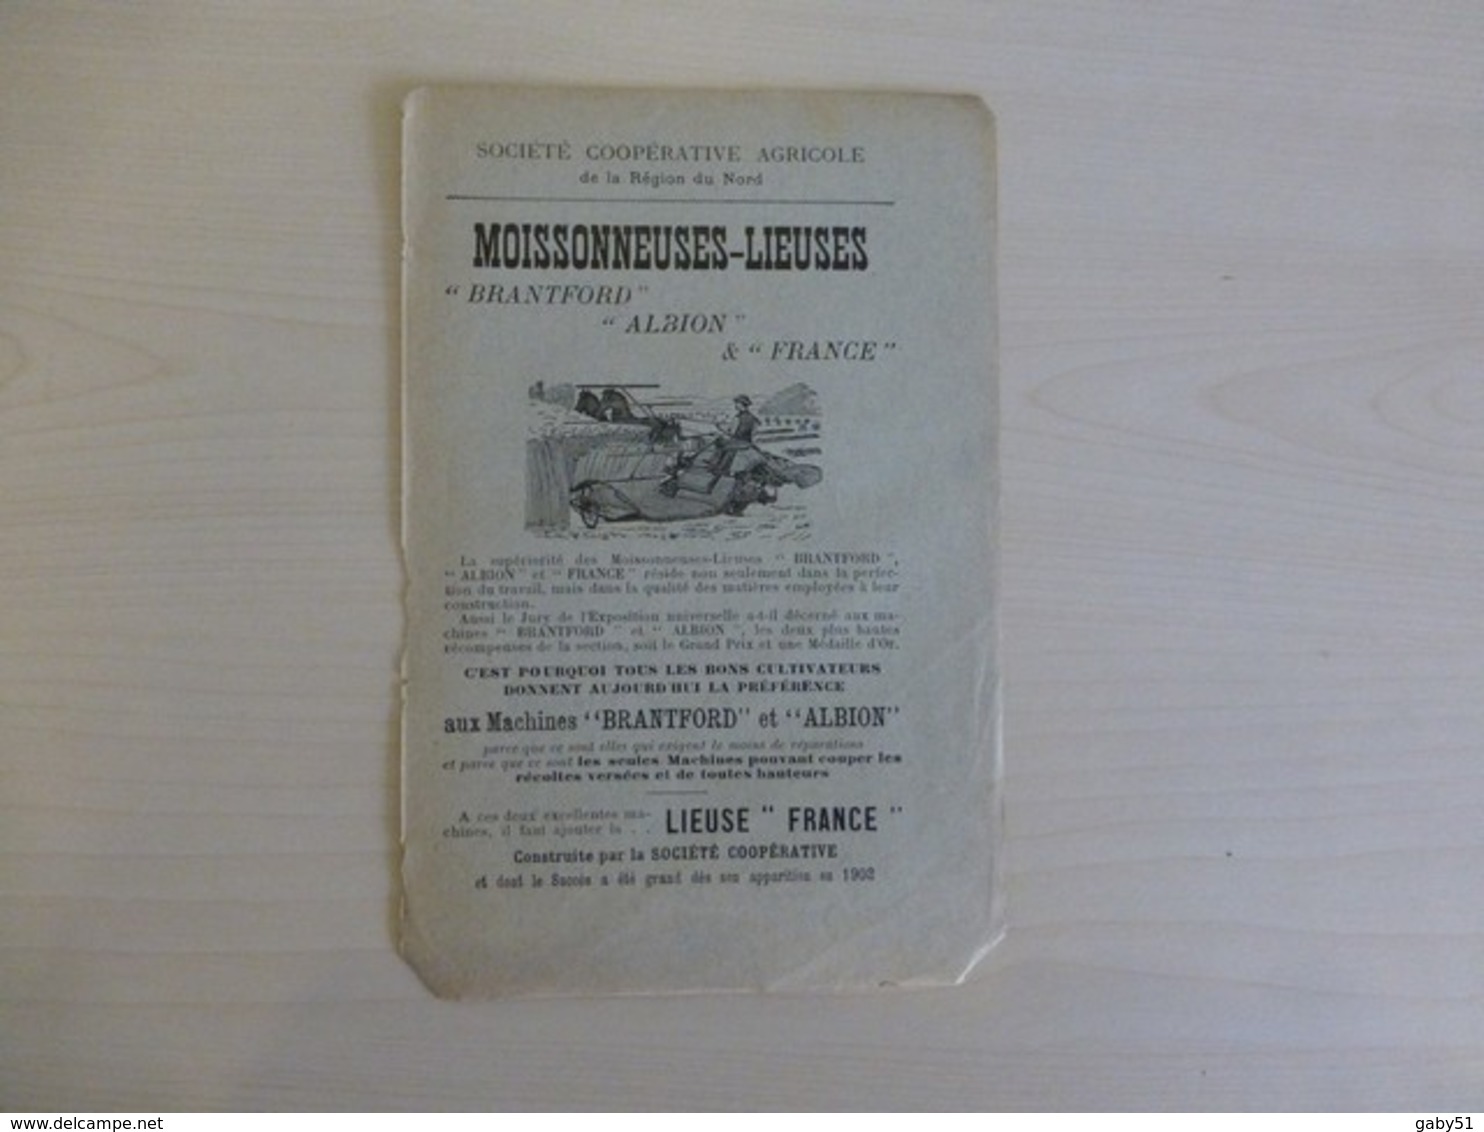 Coop Agricole Du Nord : Moissonneuse-lieuse Brantford, Albion Et France, Vers 1900, PUB Originale Ref 1576  ; PAP 10 - Advertising